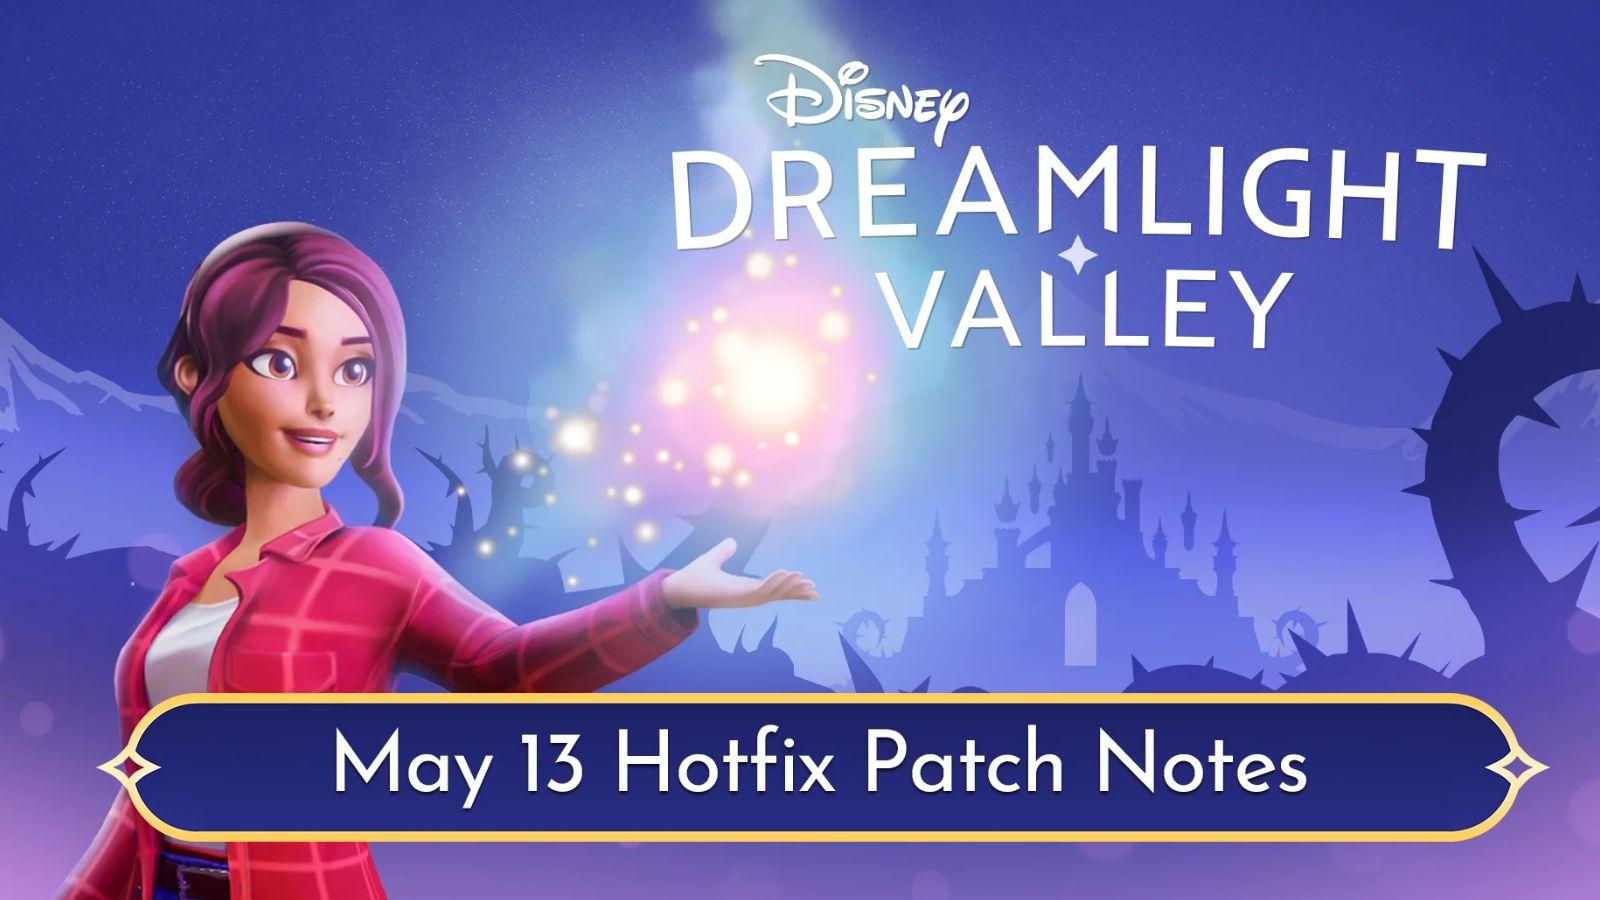 Disney Dreamlight Valley May 13 hotfix